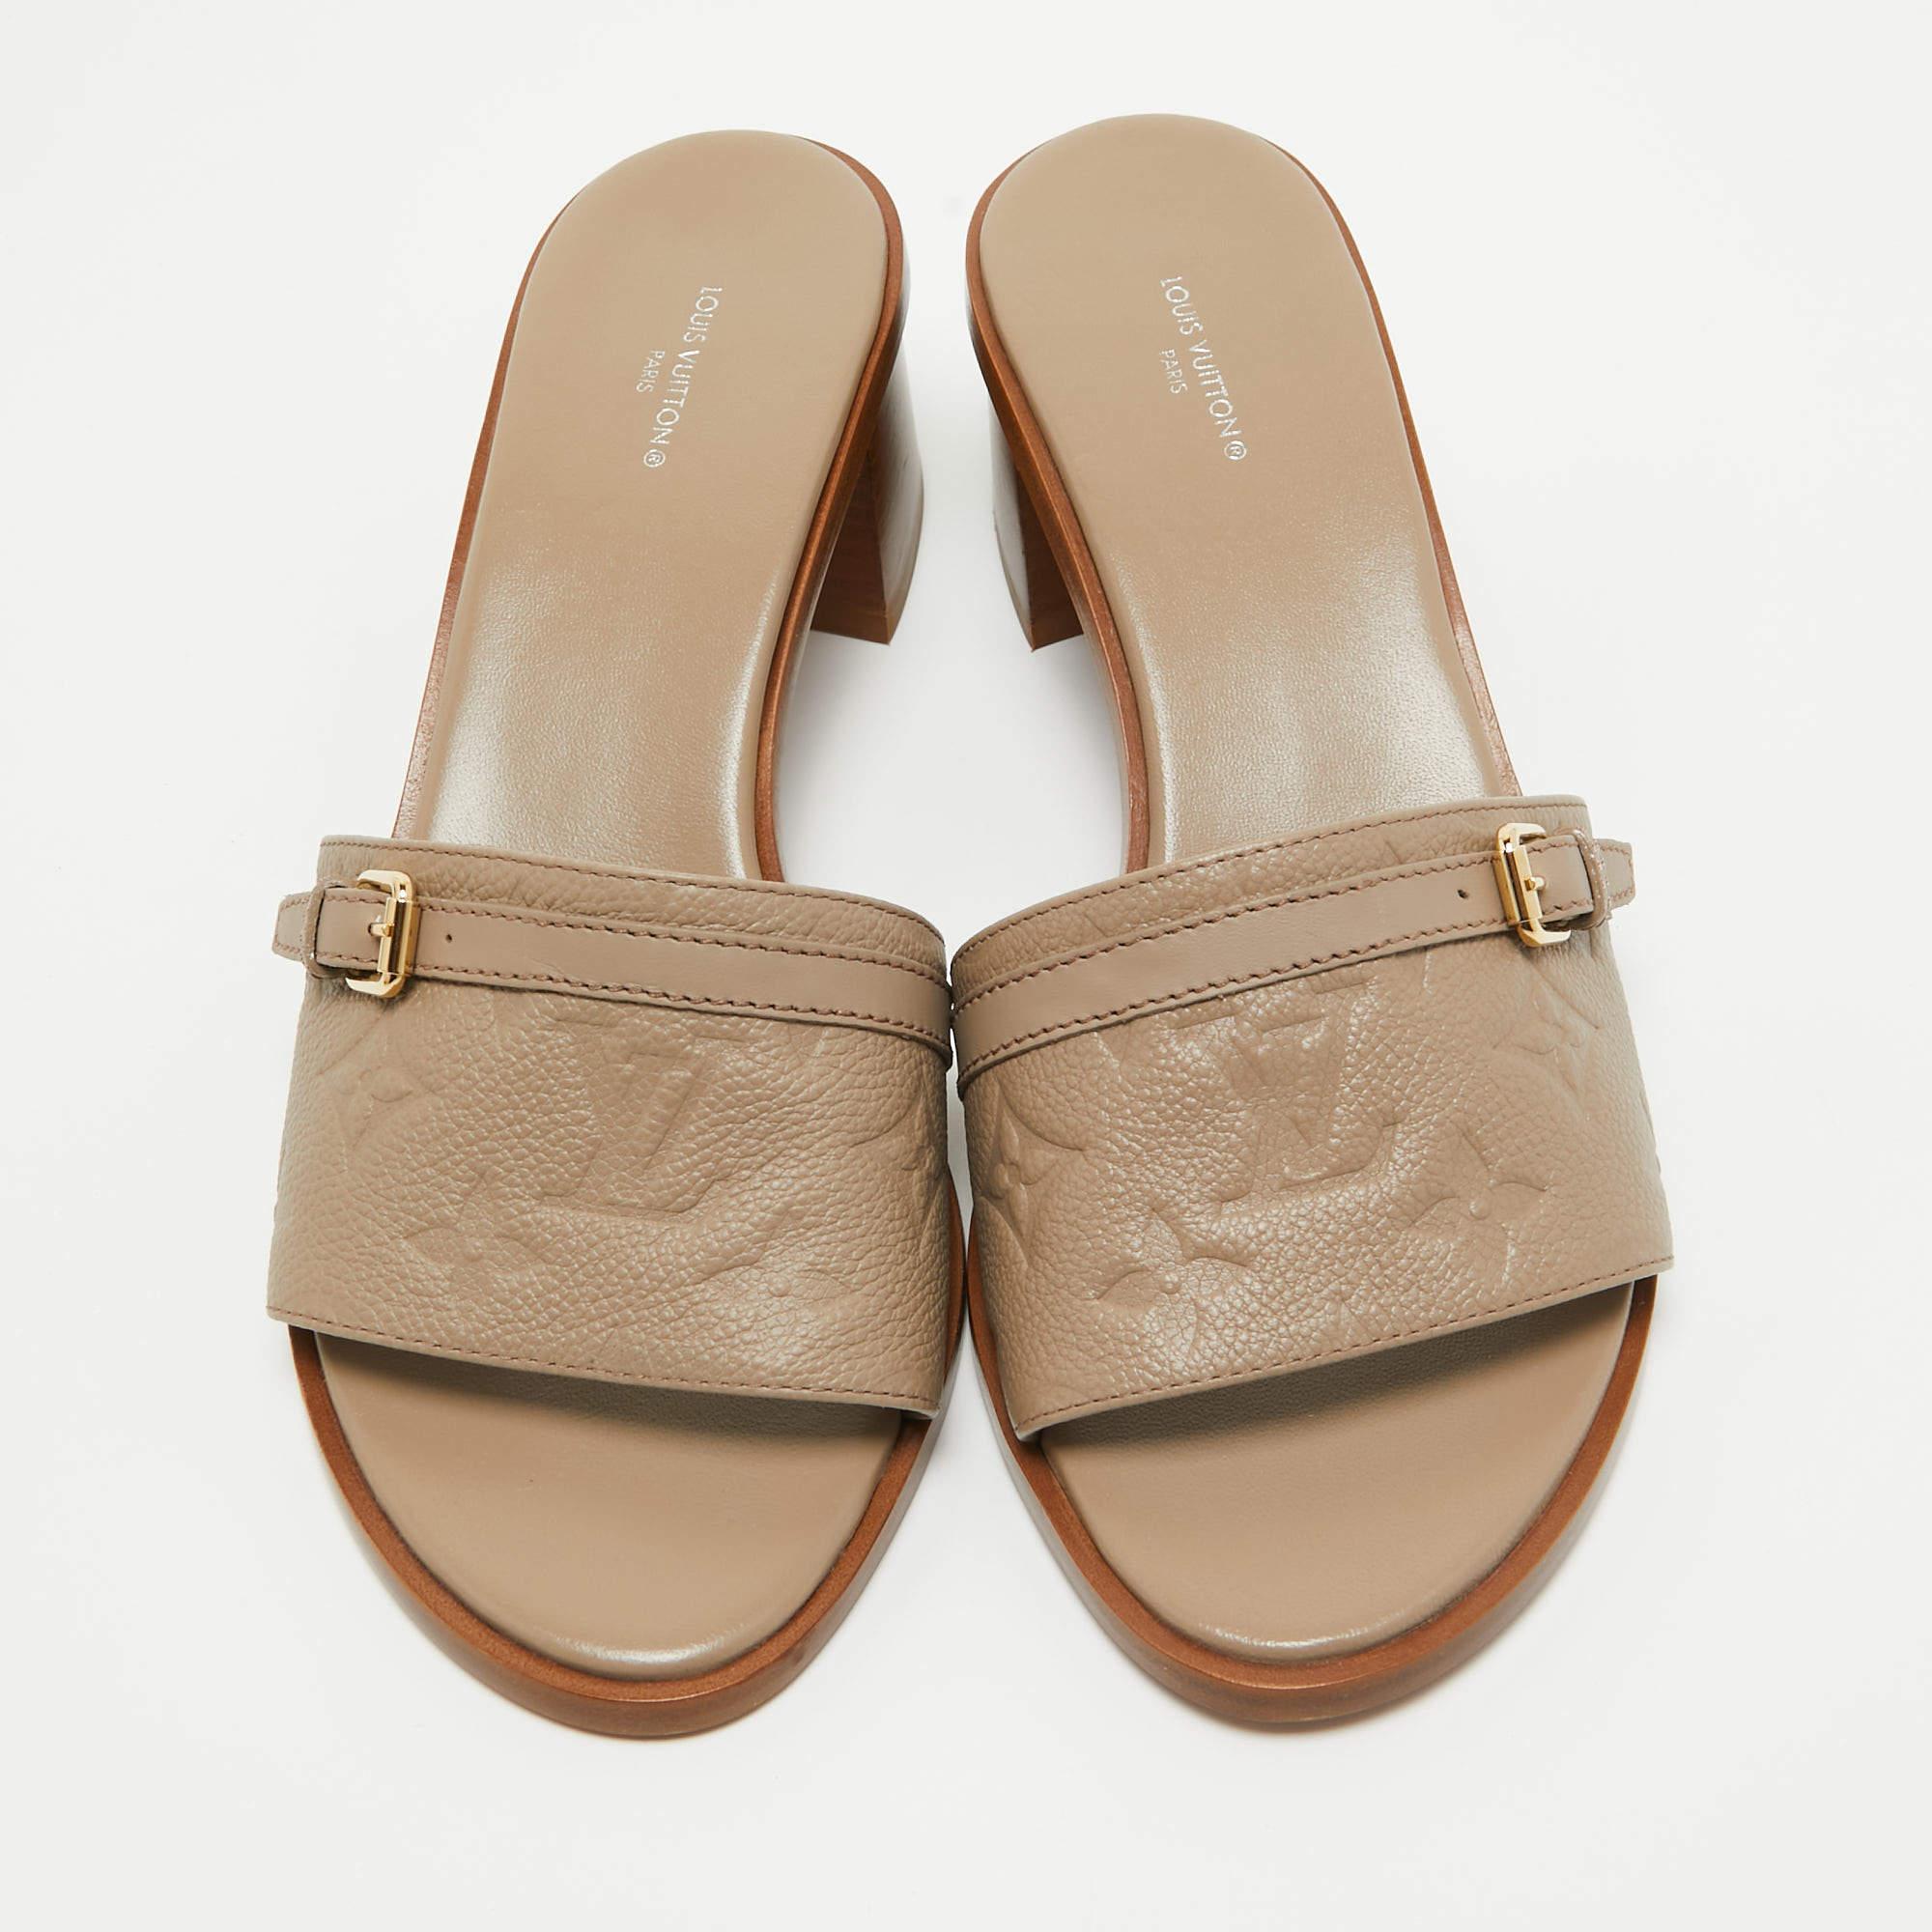 Diese Sandalen bieten Ihnen sowohl Luxus als auch Komfort. Sie sind aus hochwertigen MATERIALEN gefertigt, haben einen vielseitigen Farbton und sind mit einer bequemen Innensohle ausgestattet.

Enthält: Original-Staubbeutel

